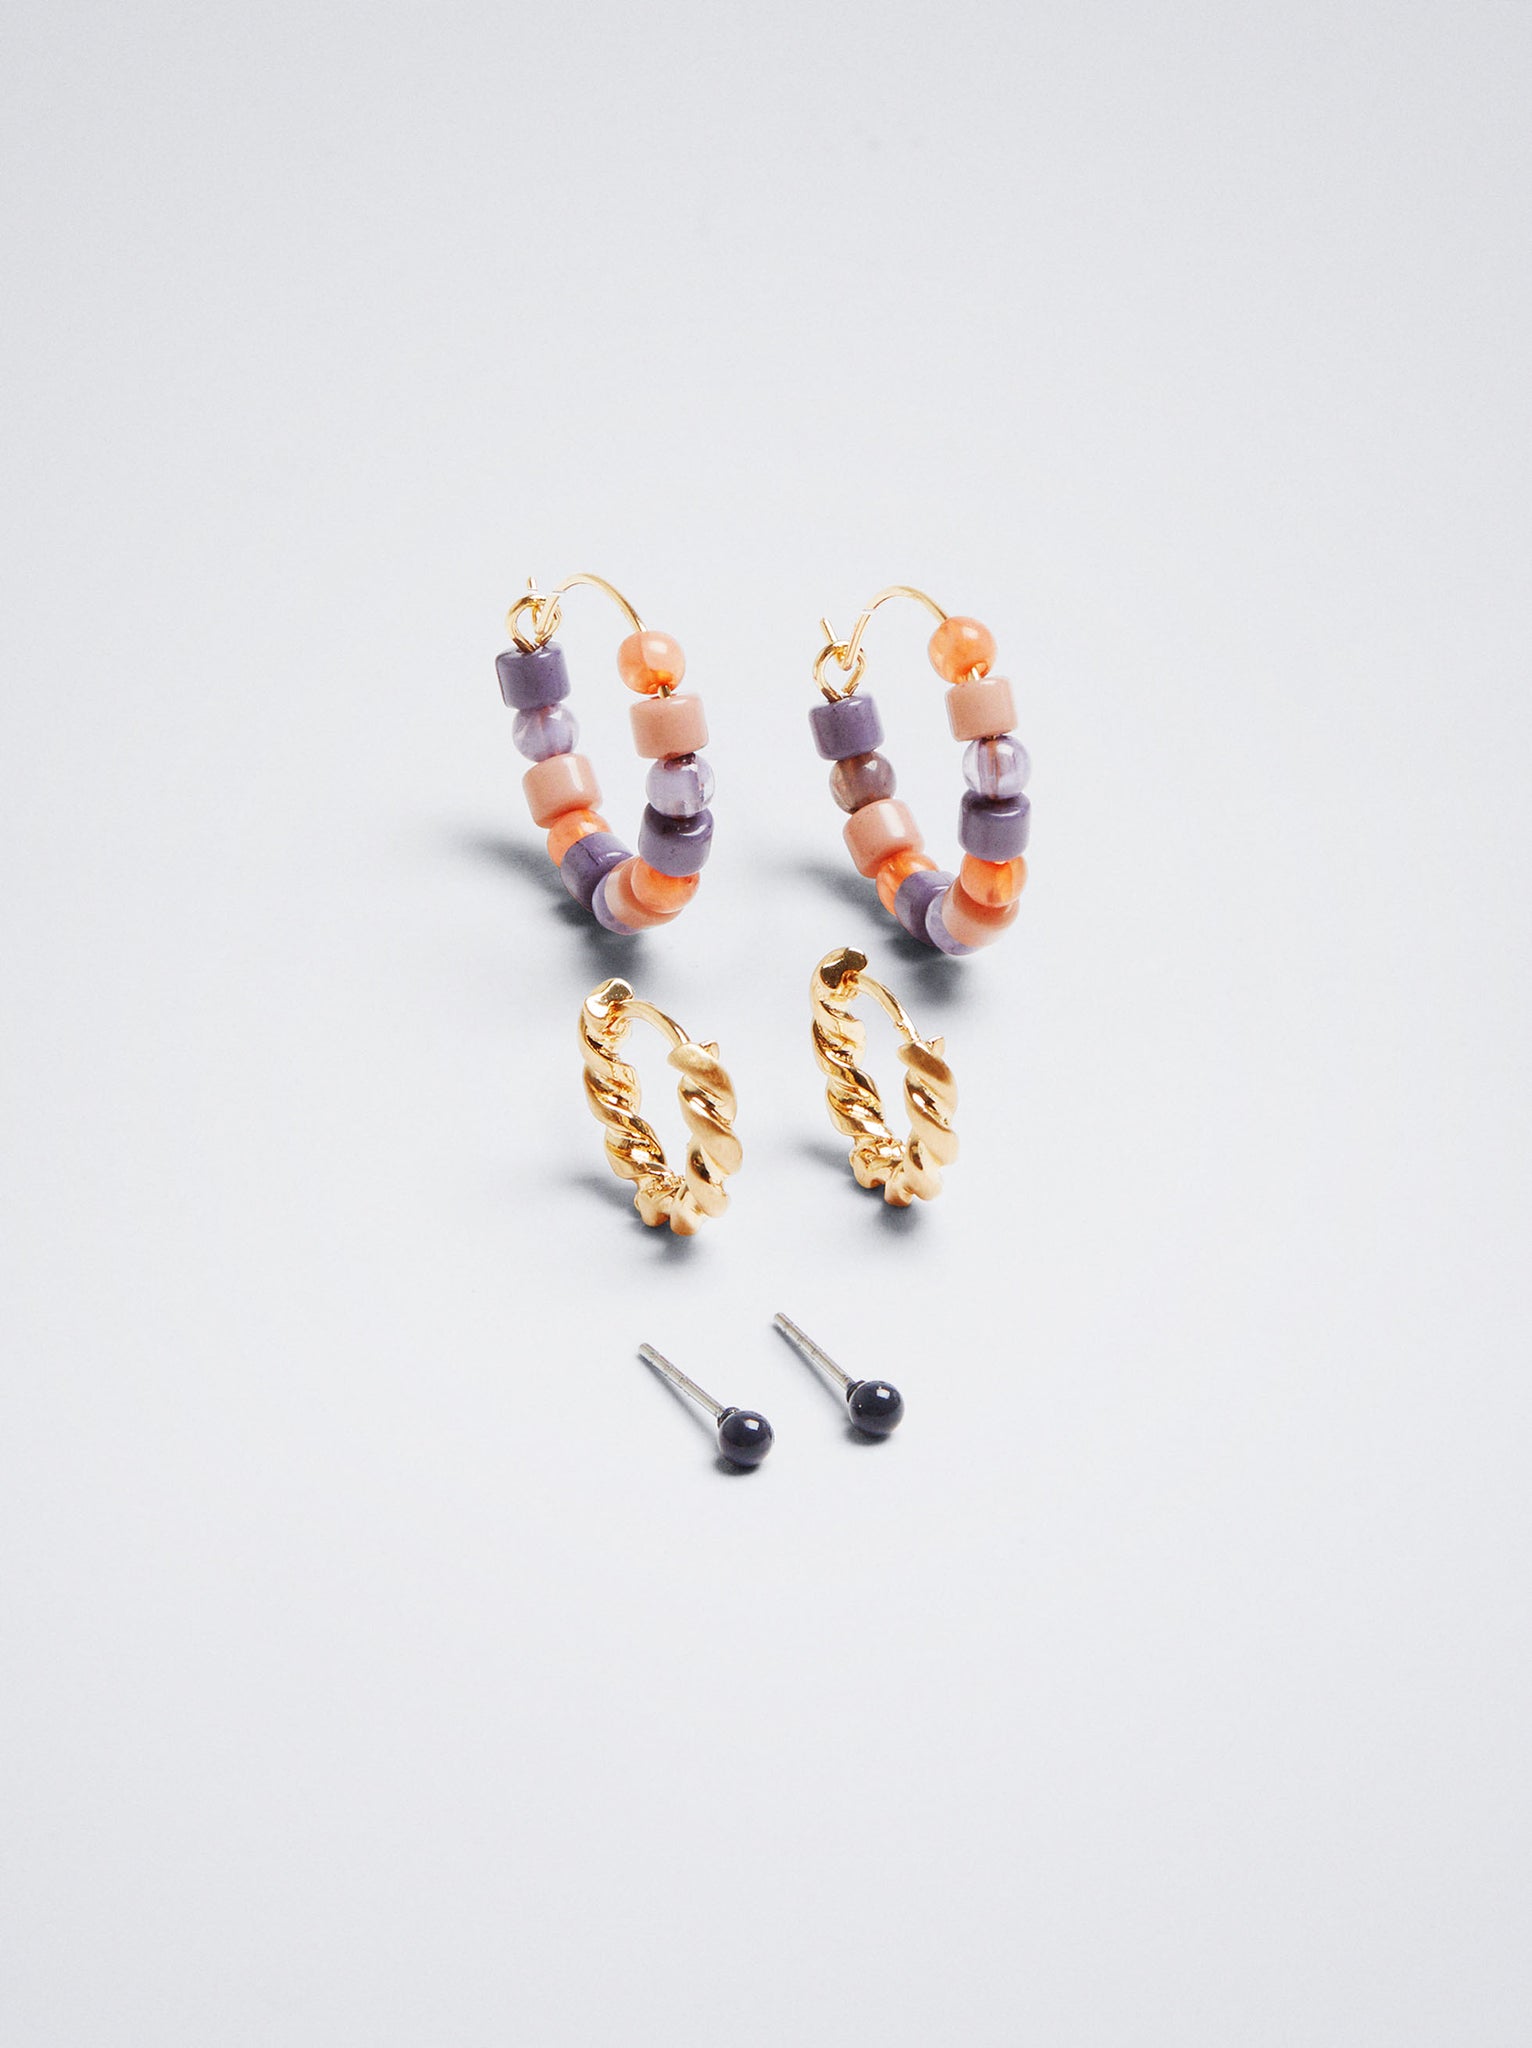 Hoop Earrings Set With Beads